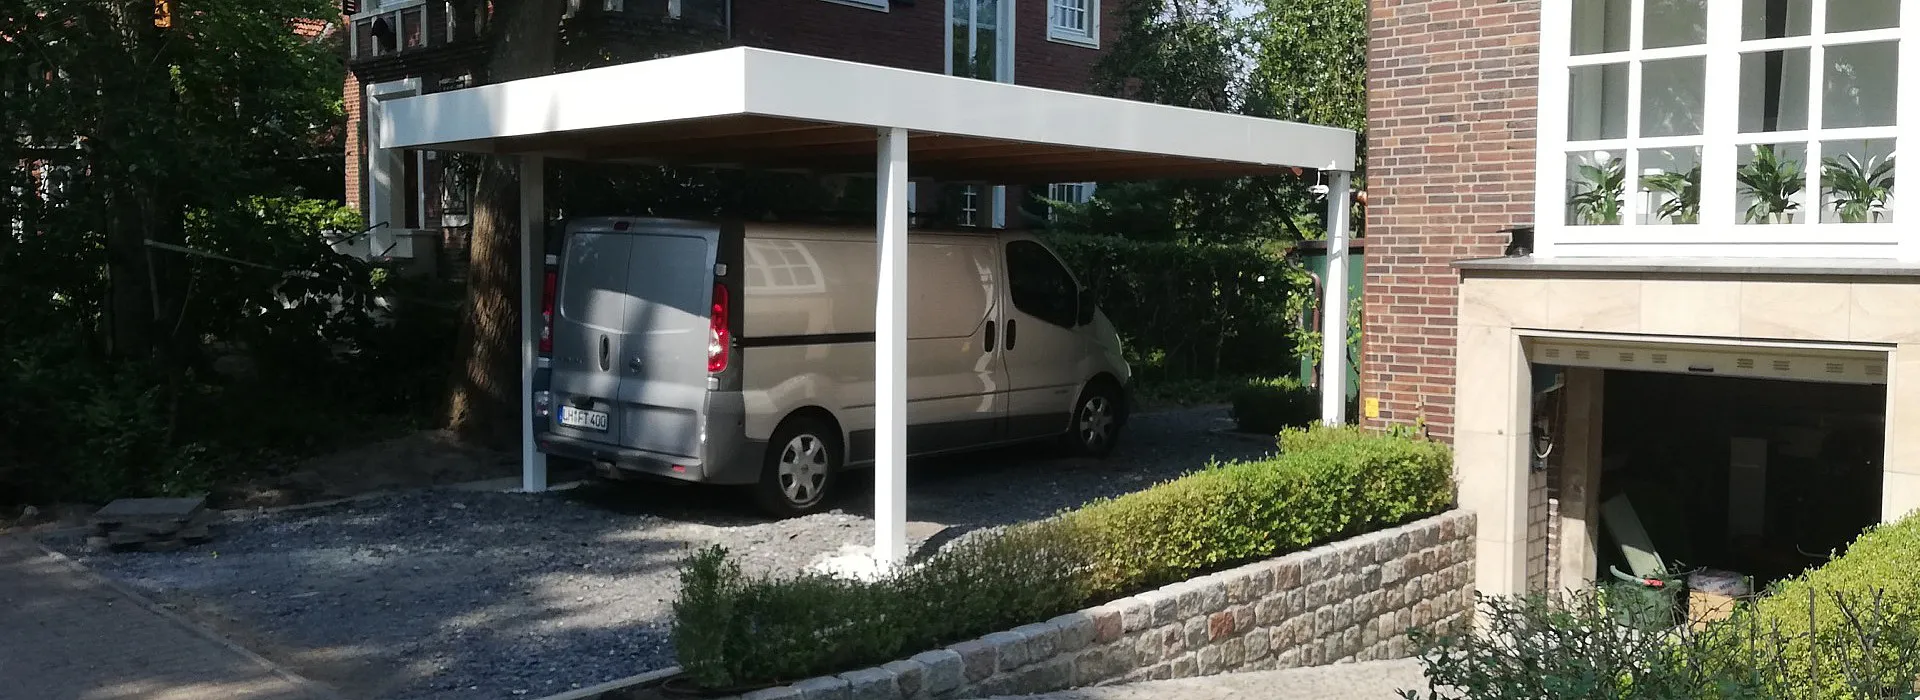 anthrazit farbenes Carport aus Metall, mit Holzdach in Einfahrt mit angrenzendem Zaun